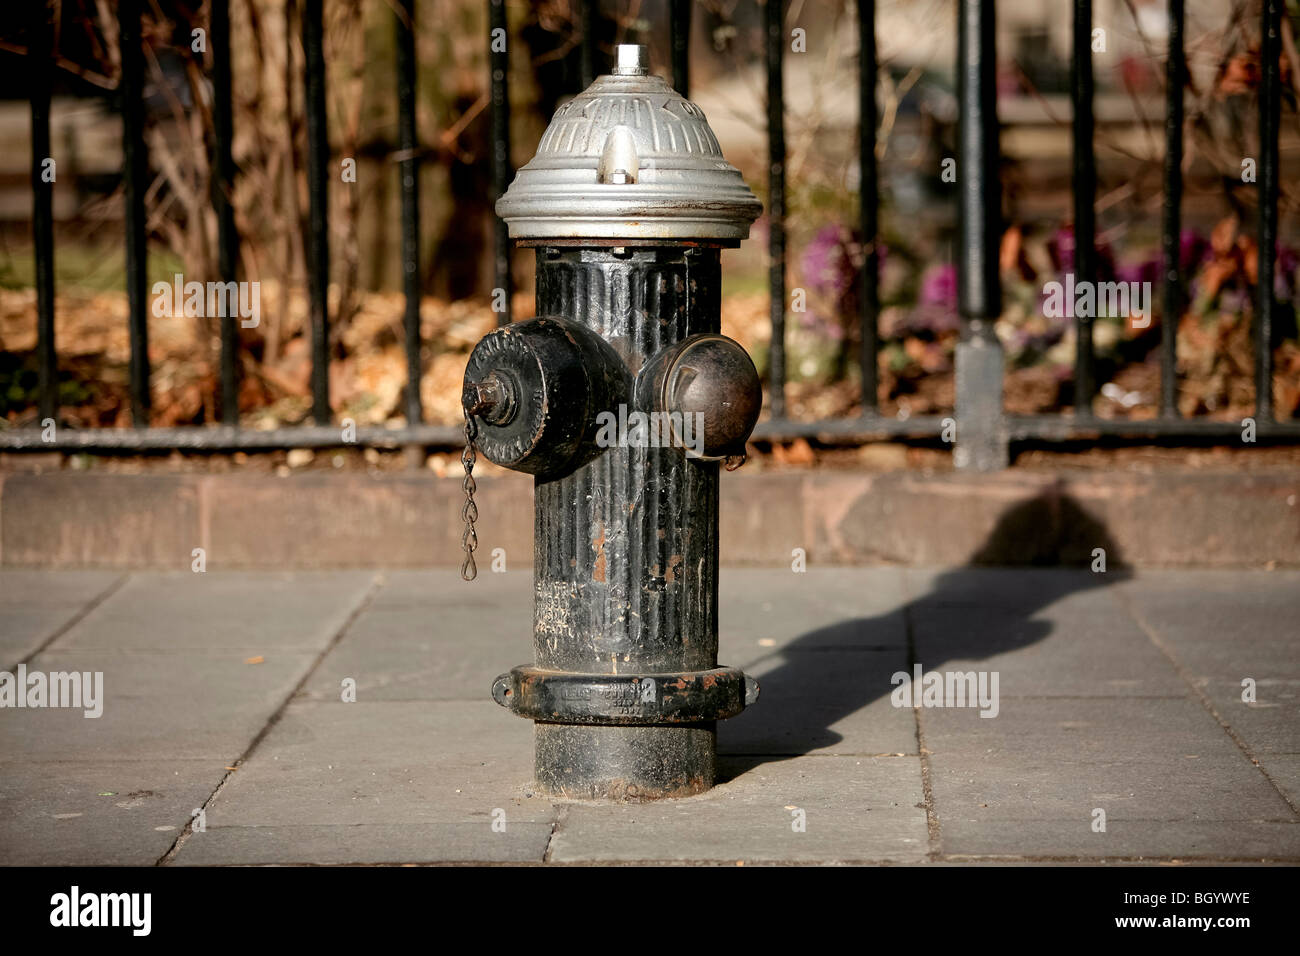 Boca de incendio o fuego plug johnny bomba en la ciudad de Nueva York Foto de stock